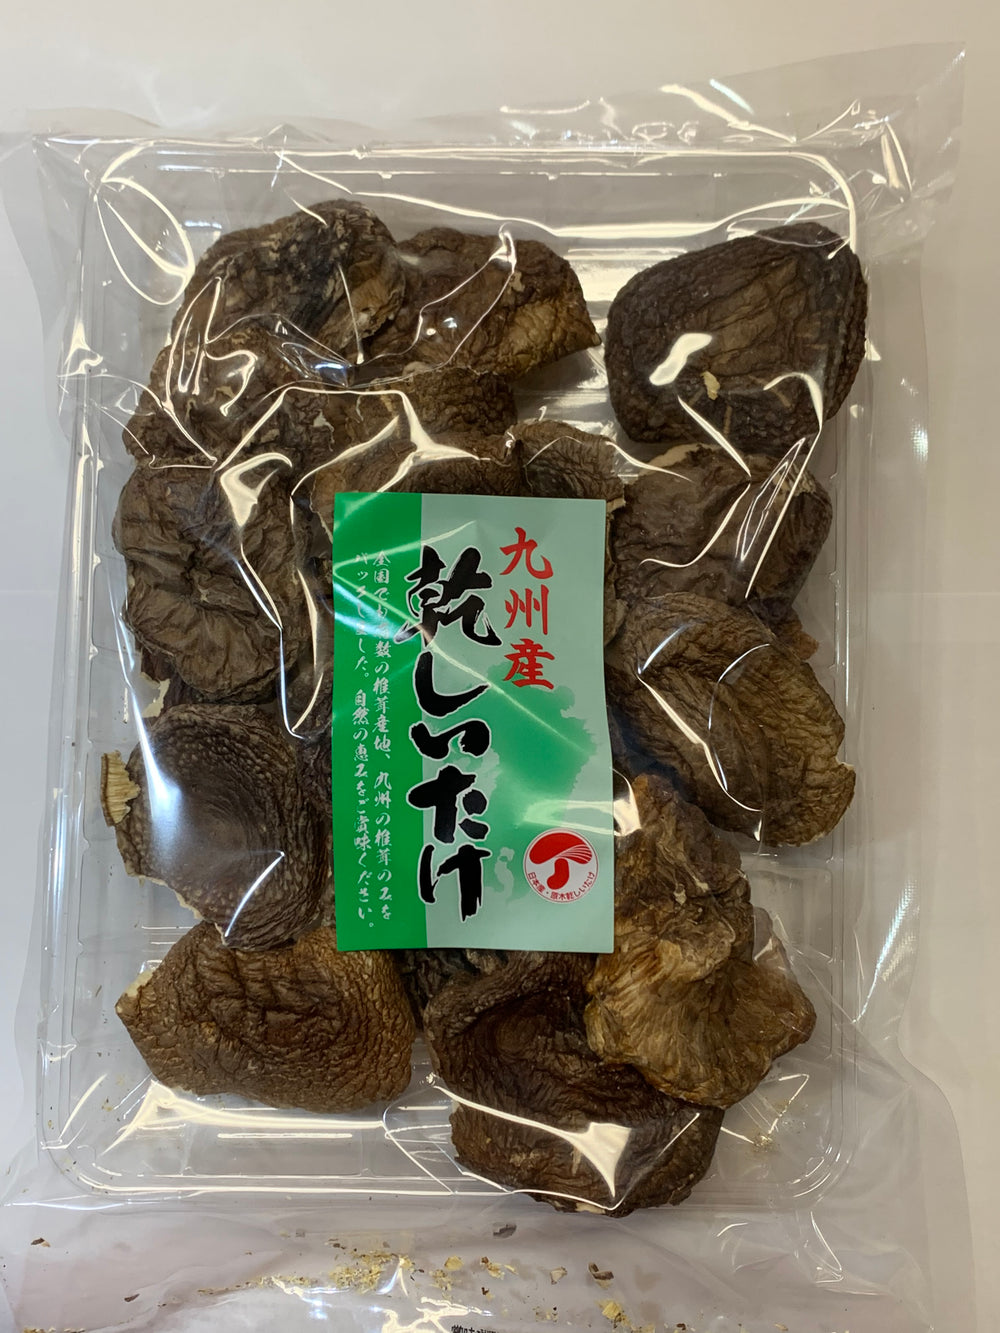 Dried Shiitake Mushroom from Kyushu Japan / 九州産 干し椎茸 55g - Konbiniya Japan Centre